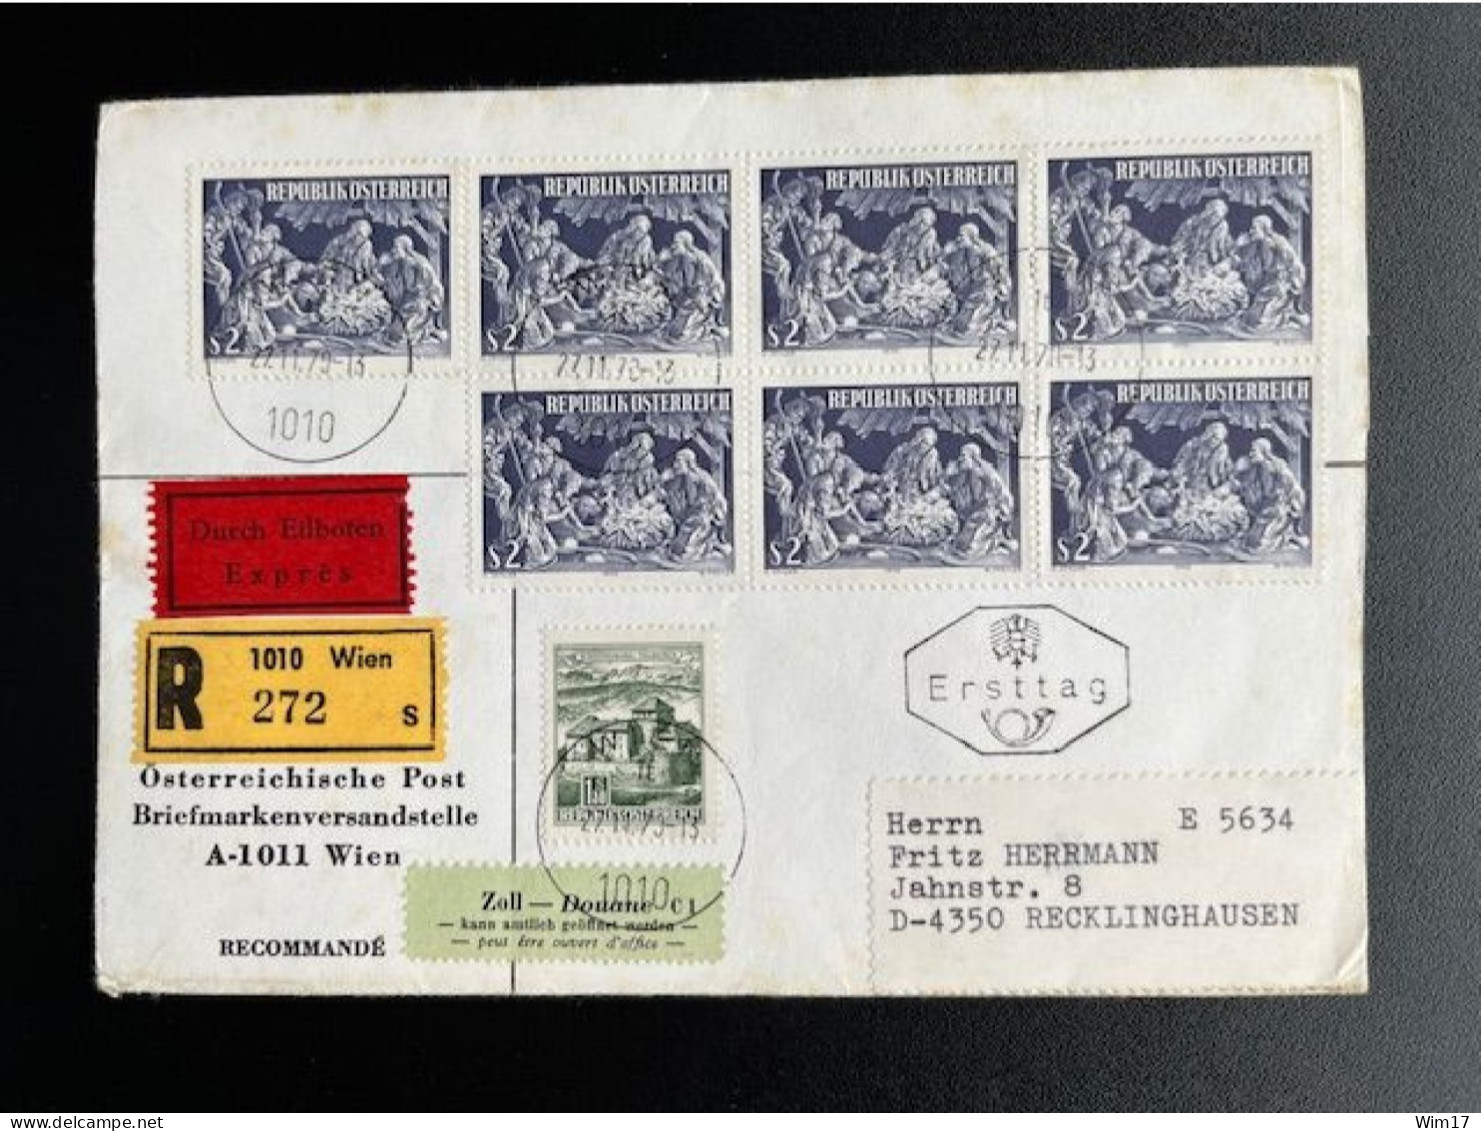 AUSTRIA 1970 REGISTERED EXPRESS LETTER VIENNA WIEN TO RECKLINGHAUSEN 27-11-1970 OSTERREICH EINSCHREIBEN EXPRES - Covers & Documents